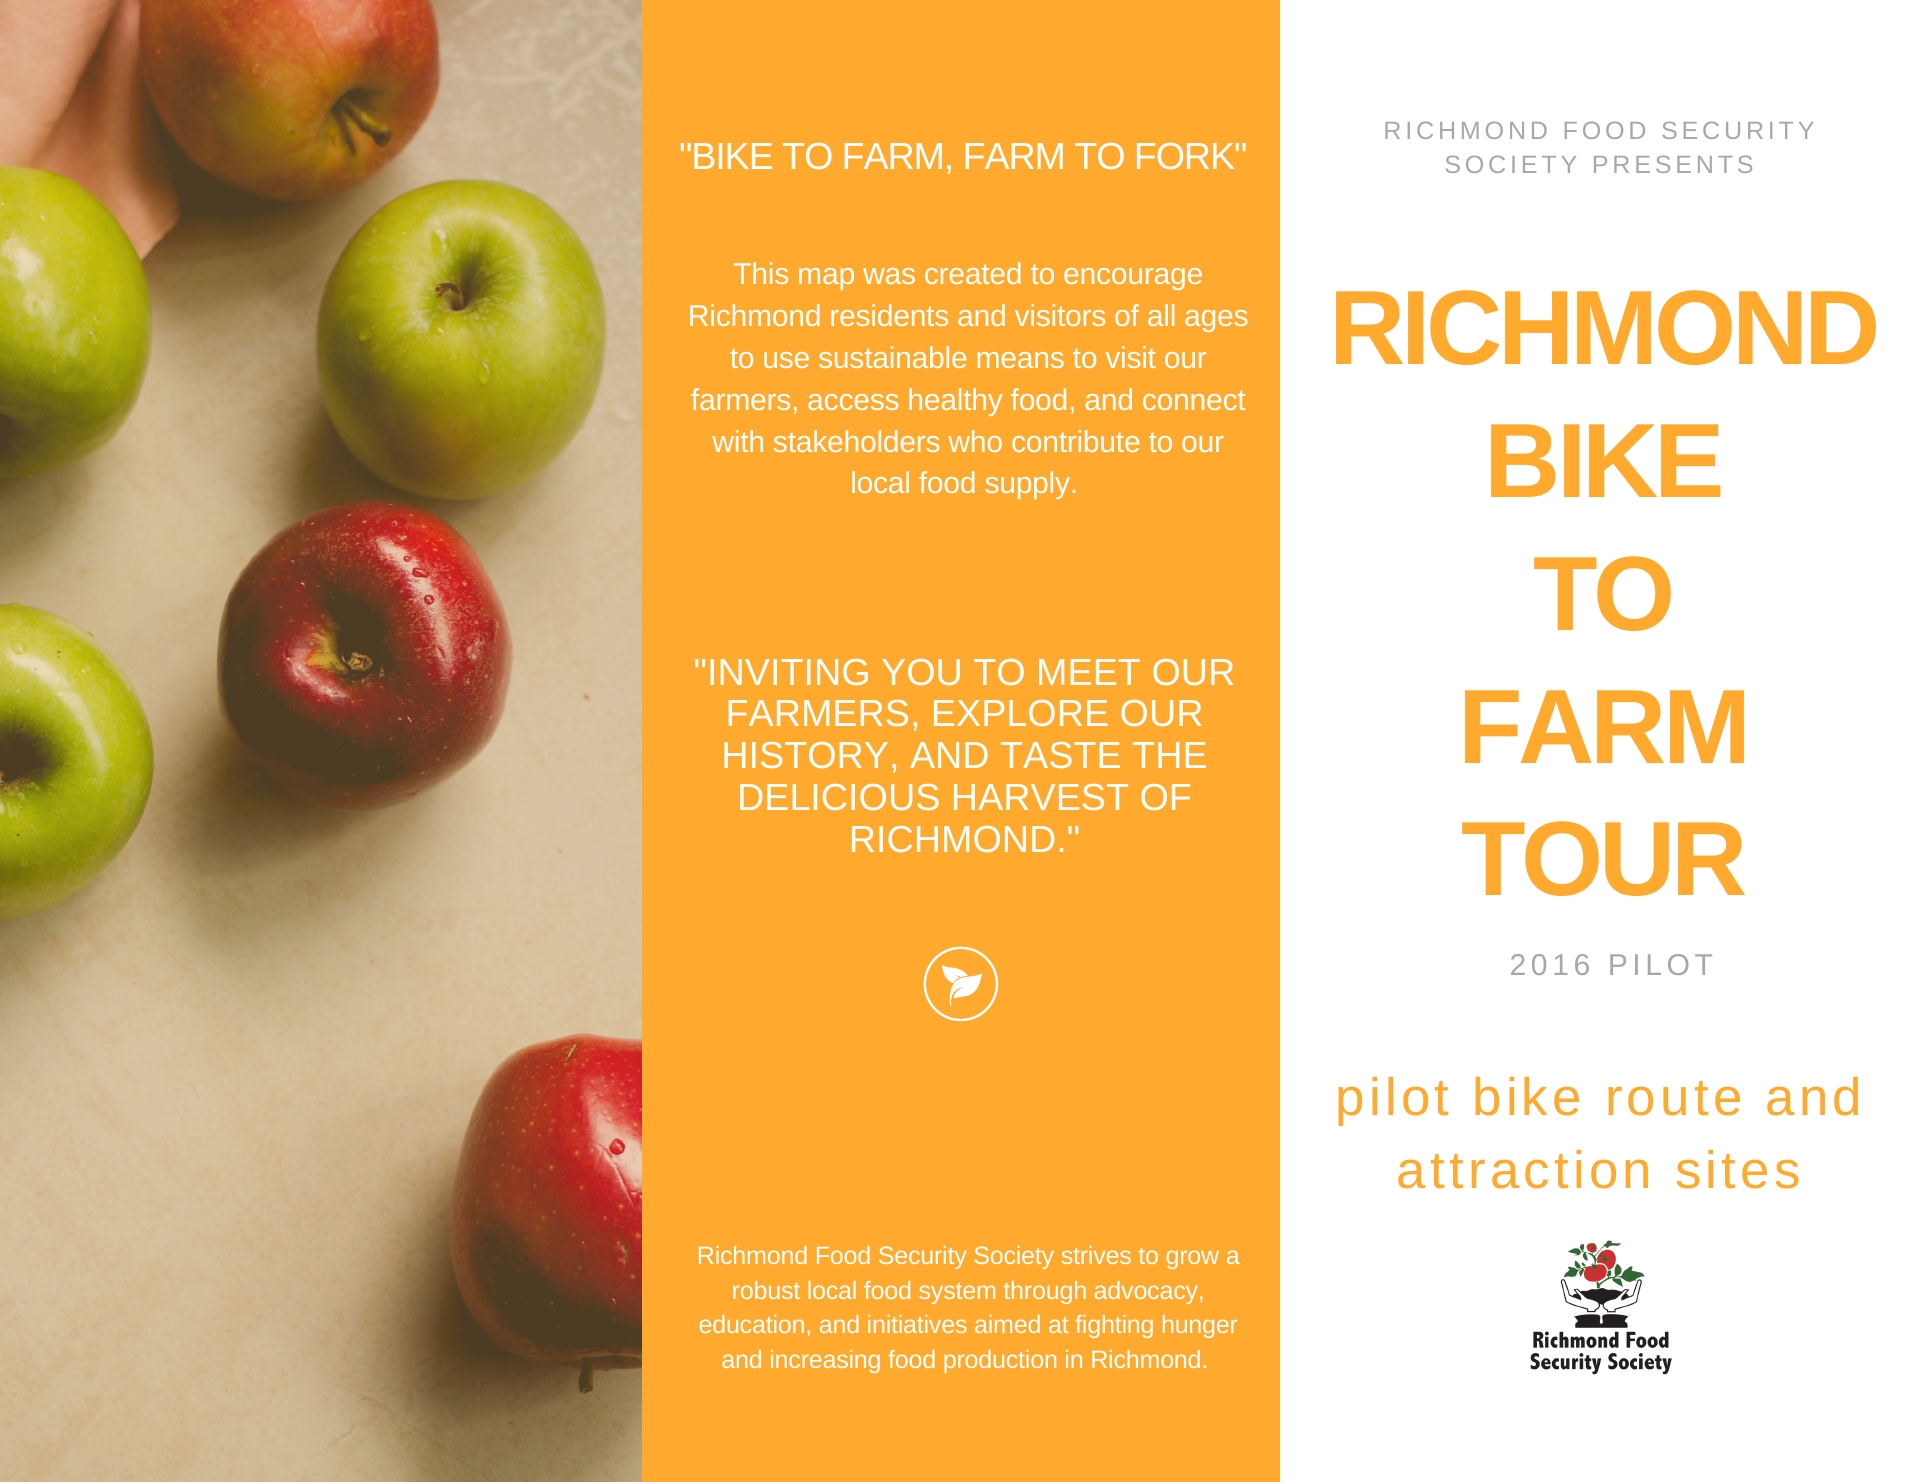 richmond-bike-to-farm-tour-2016-pilot-brochure-page-2